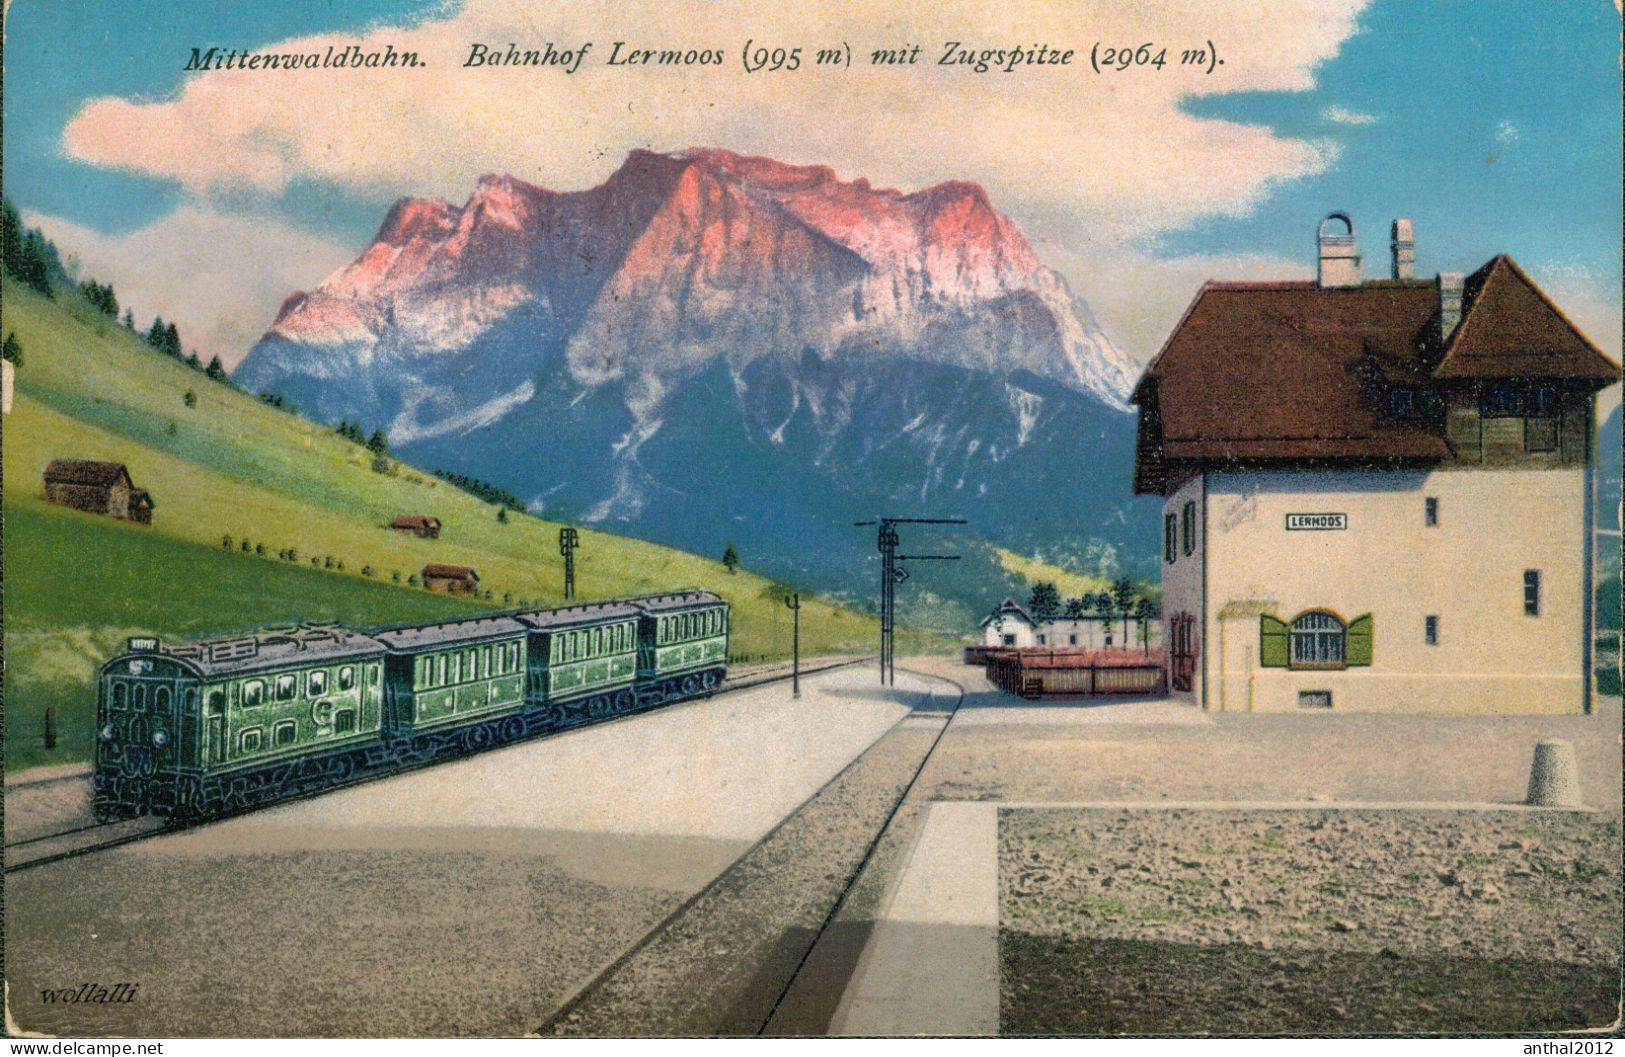 Superrar Bahnhof La Gare Lermoos Österreich Tirol Mit Zug 24.5.1921 Zugspitze - Stazioni Con Treni